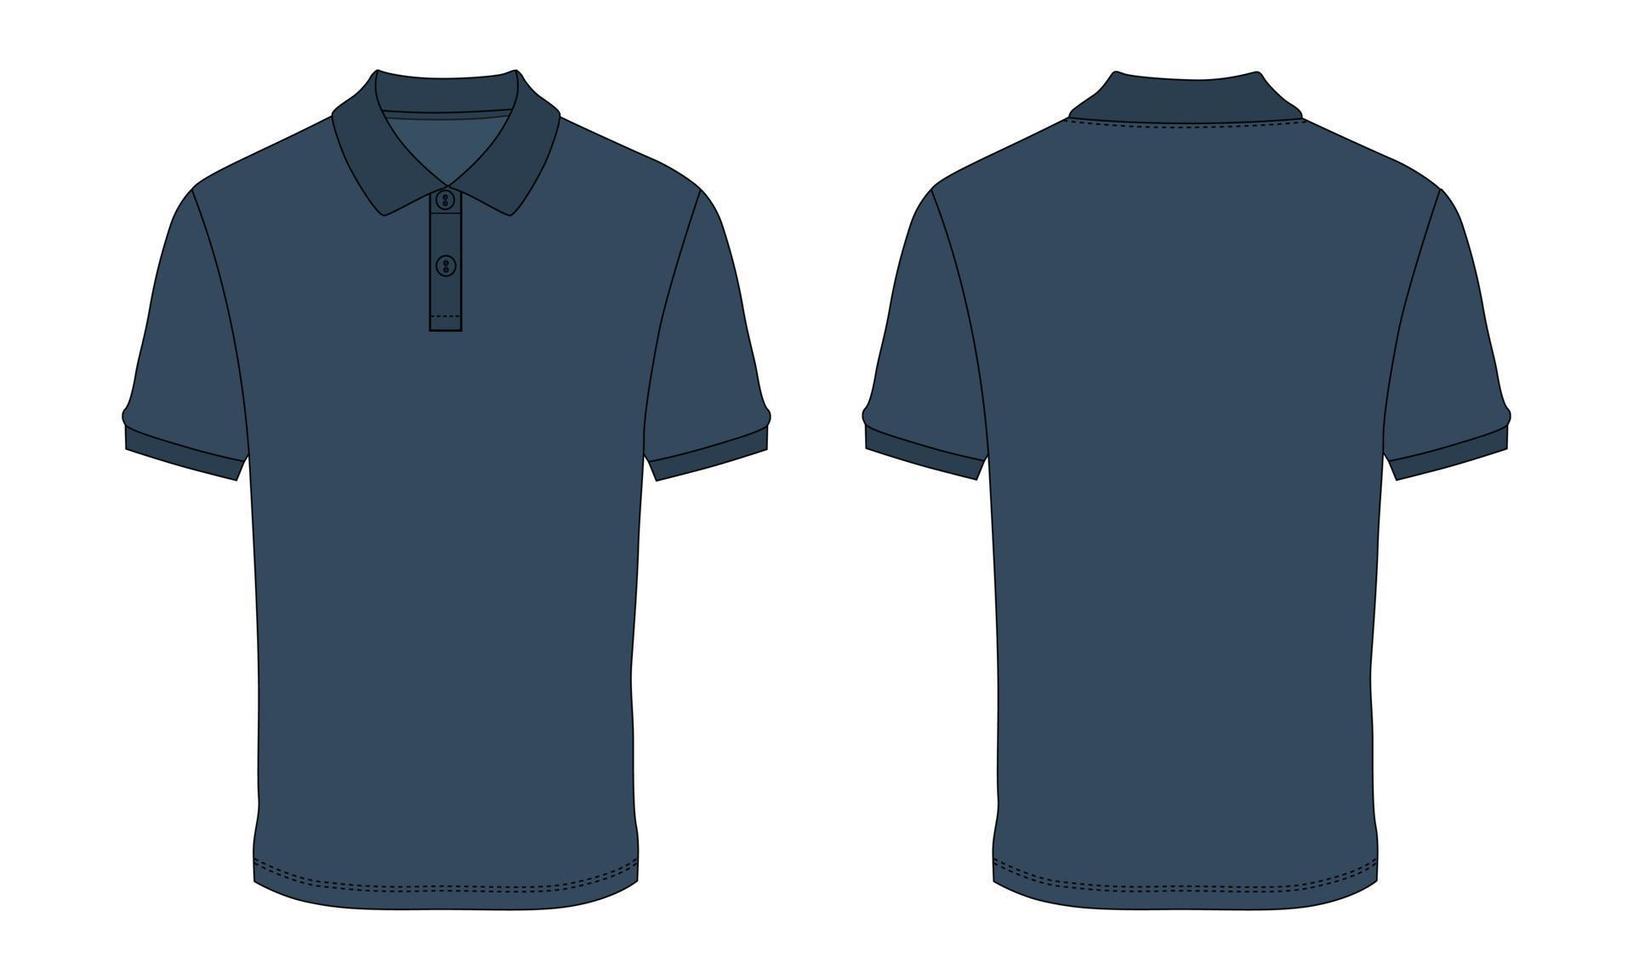 Kurzarm Poloshirt Mode flache Skizze Vektor Illustration marineblaue Farbvorlage Vorder- und Rückansichten isoliert auf weißem Hintergrund.